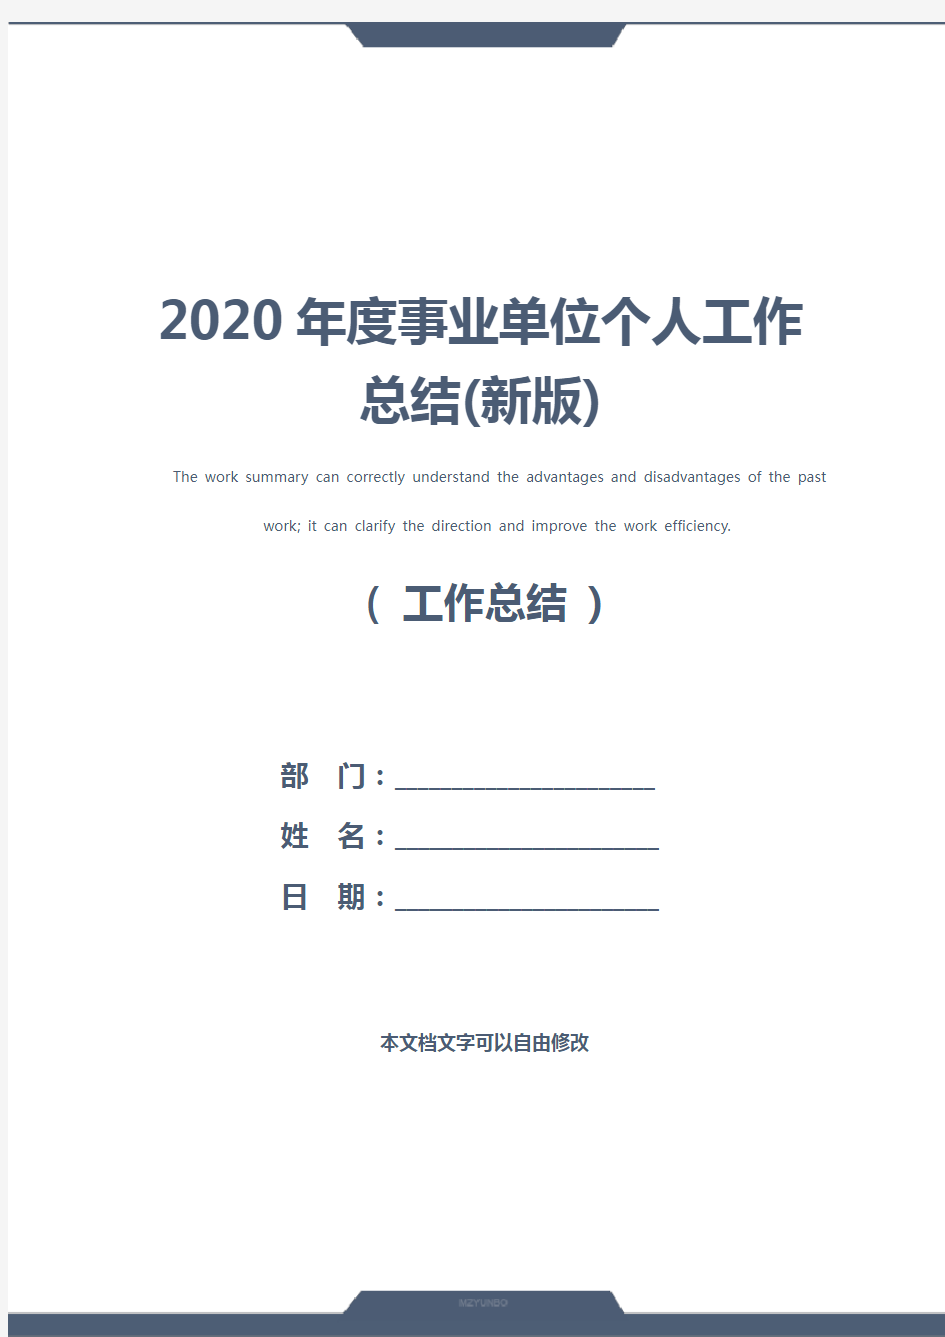 2020年度事业单位个人工作总结(新版)